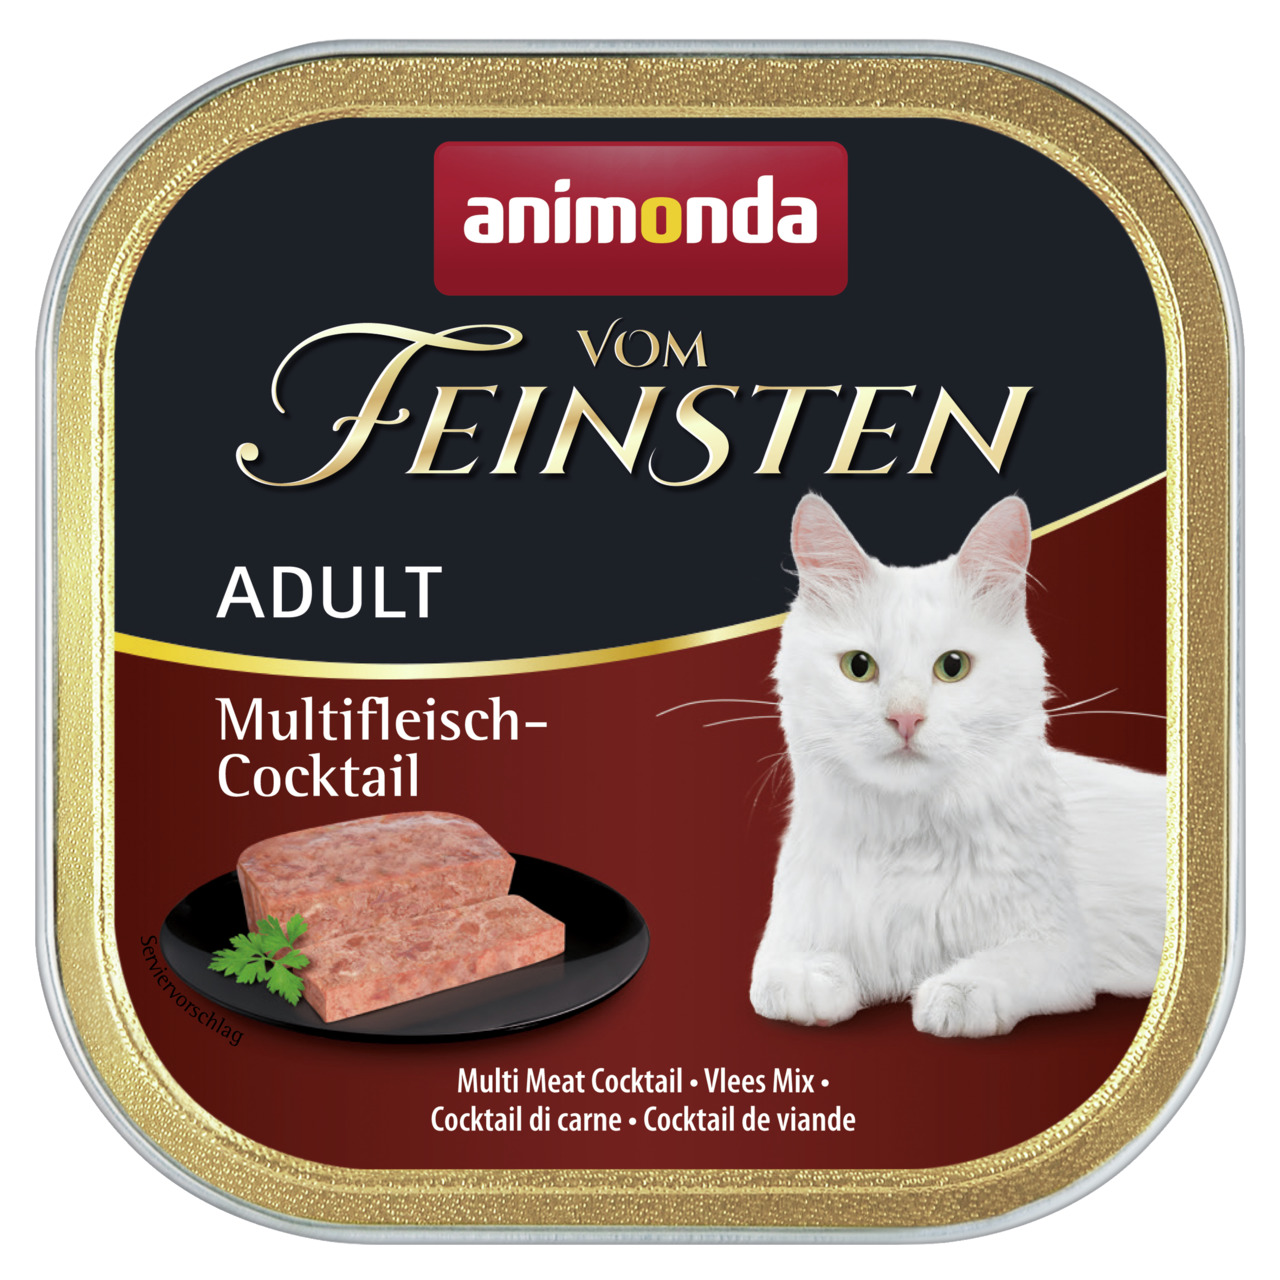 Animonda vom Feinsten Adult Multifleisch-Cocktail Katzen Nassfutter 100 g